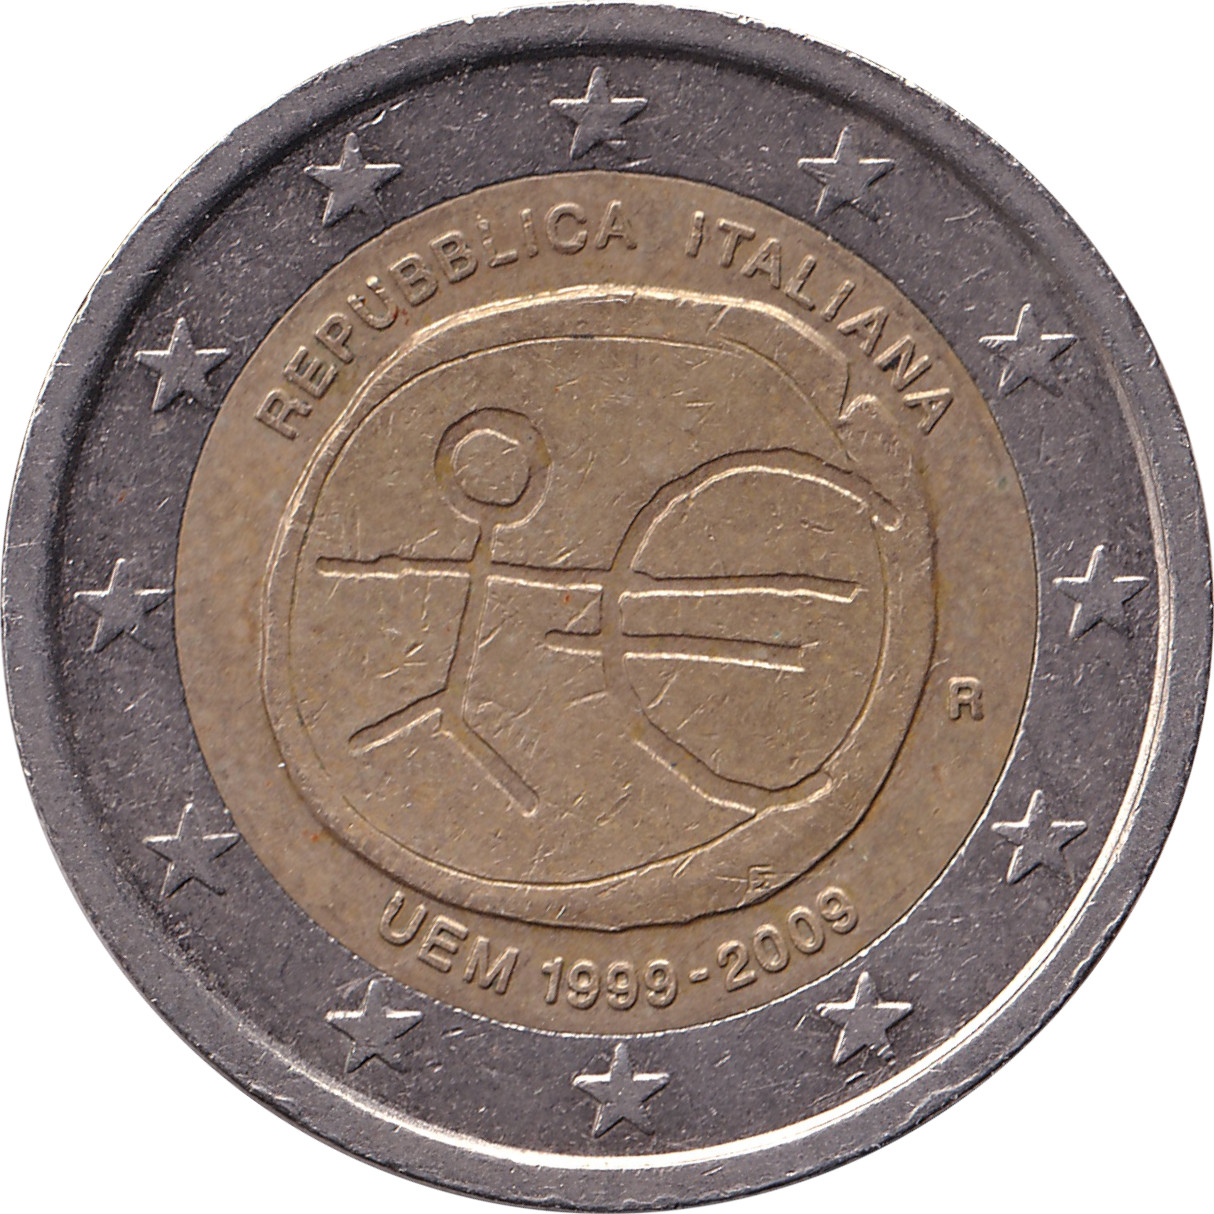 2 euro - Union Économique Monétaire - Italie